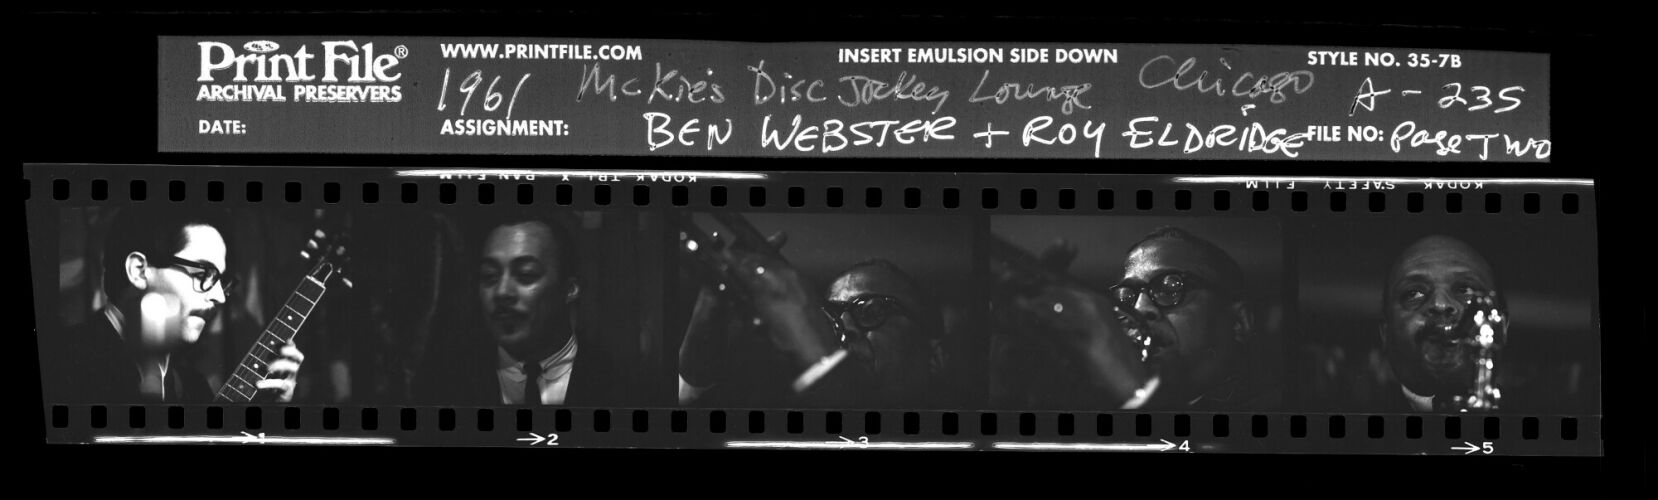 TW_Ben Webster_A235_part 2: Ben Webster